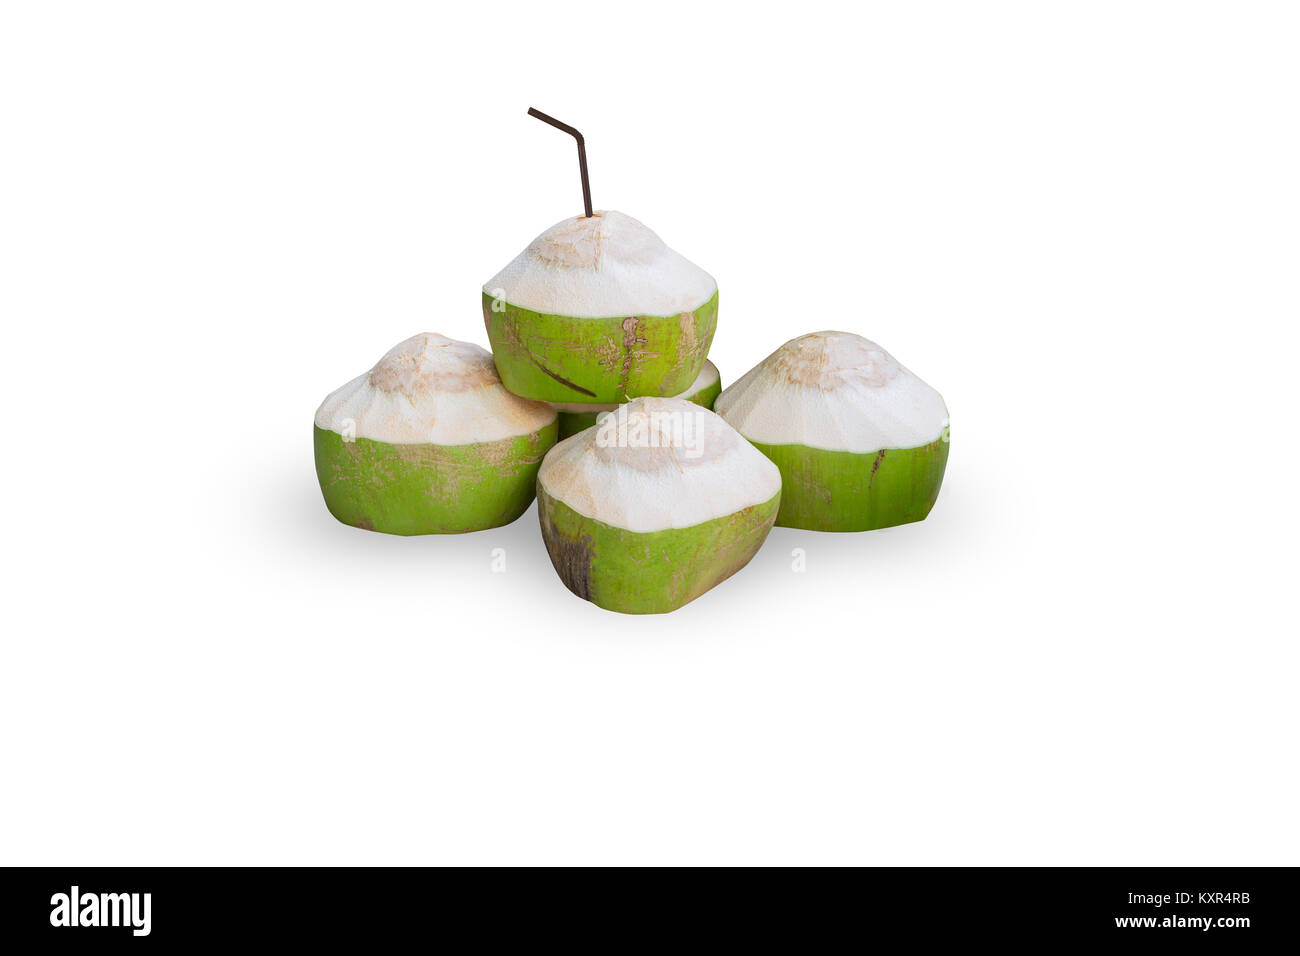 Le jus de noix de coco frais Fruits nutrition haut verre isolé sur blanc avec clipping path Banque D'Images